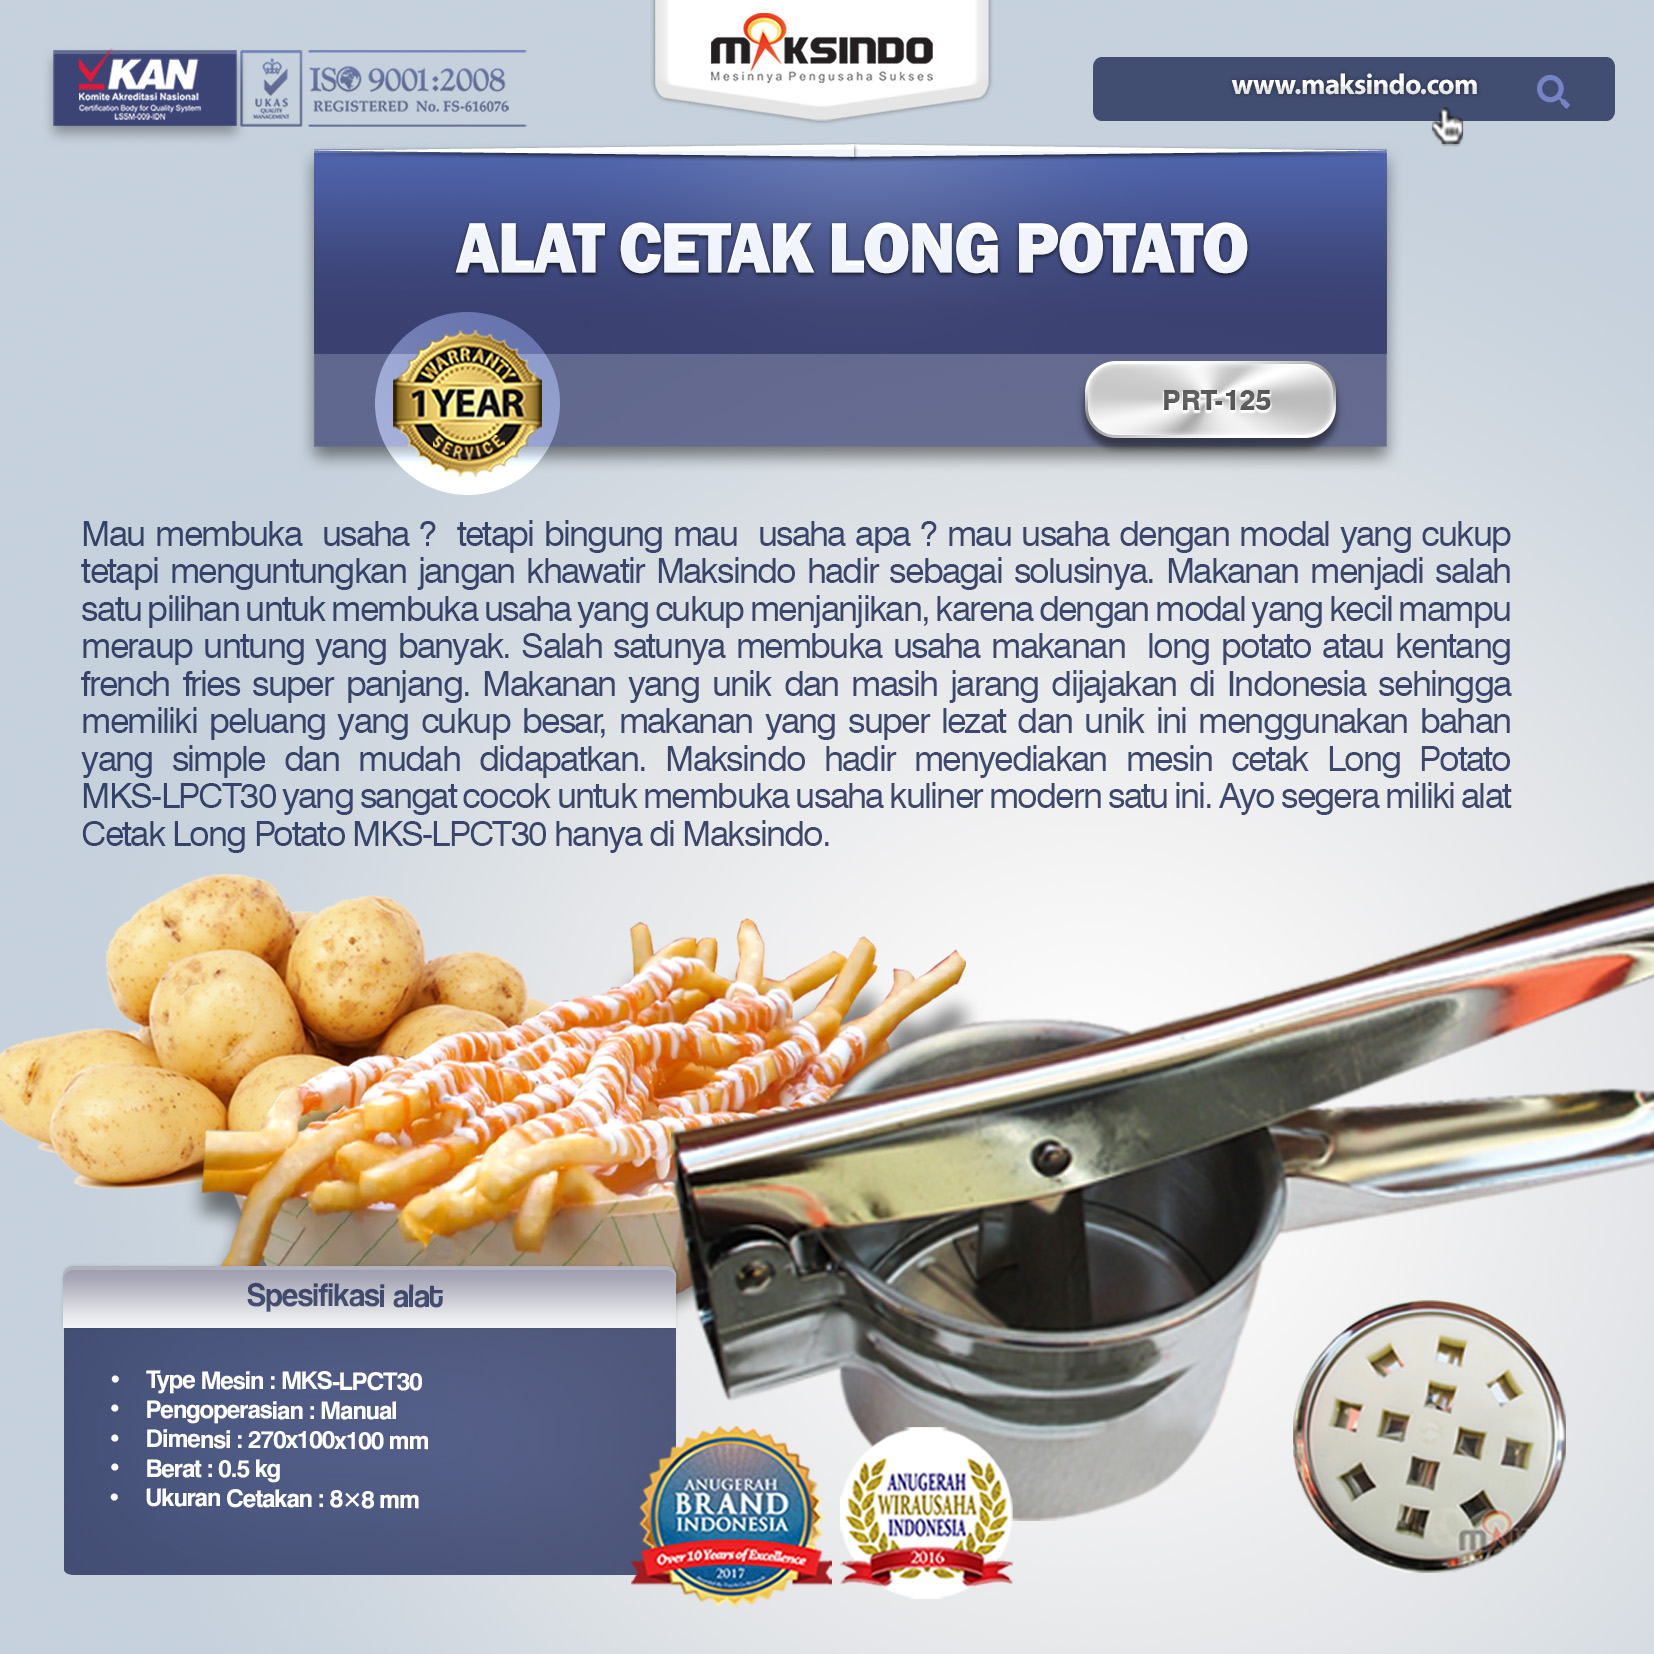 Jual Alat Cetak Long Potato MKS-LPCT30 di Tangerang